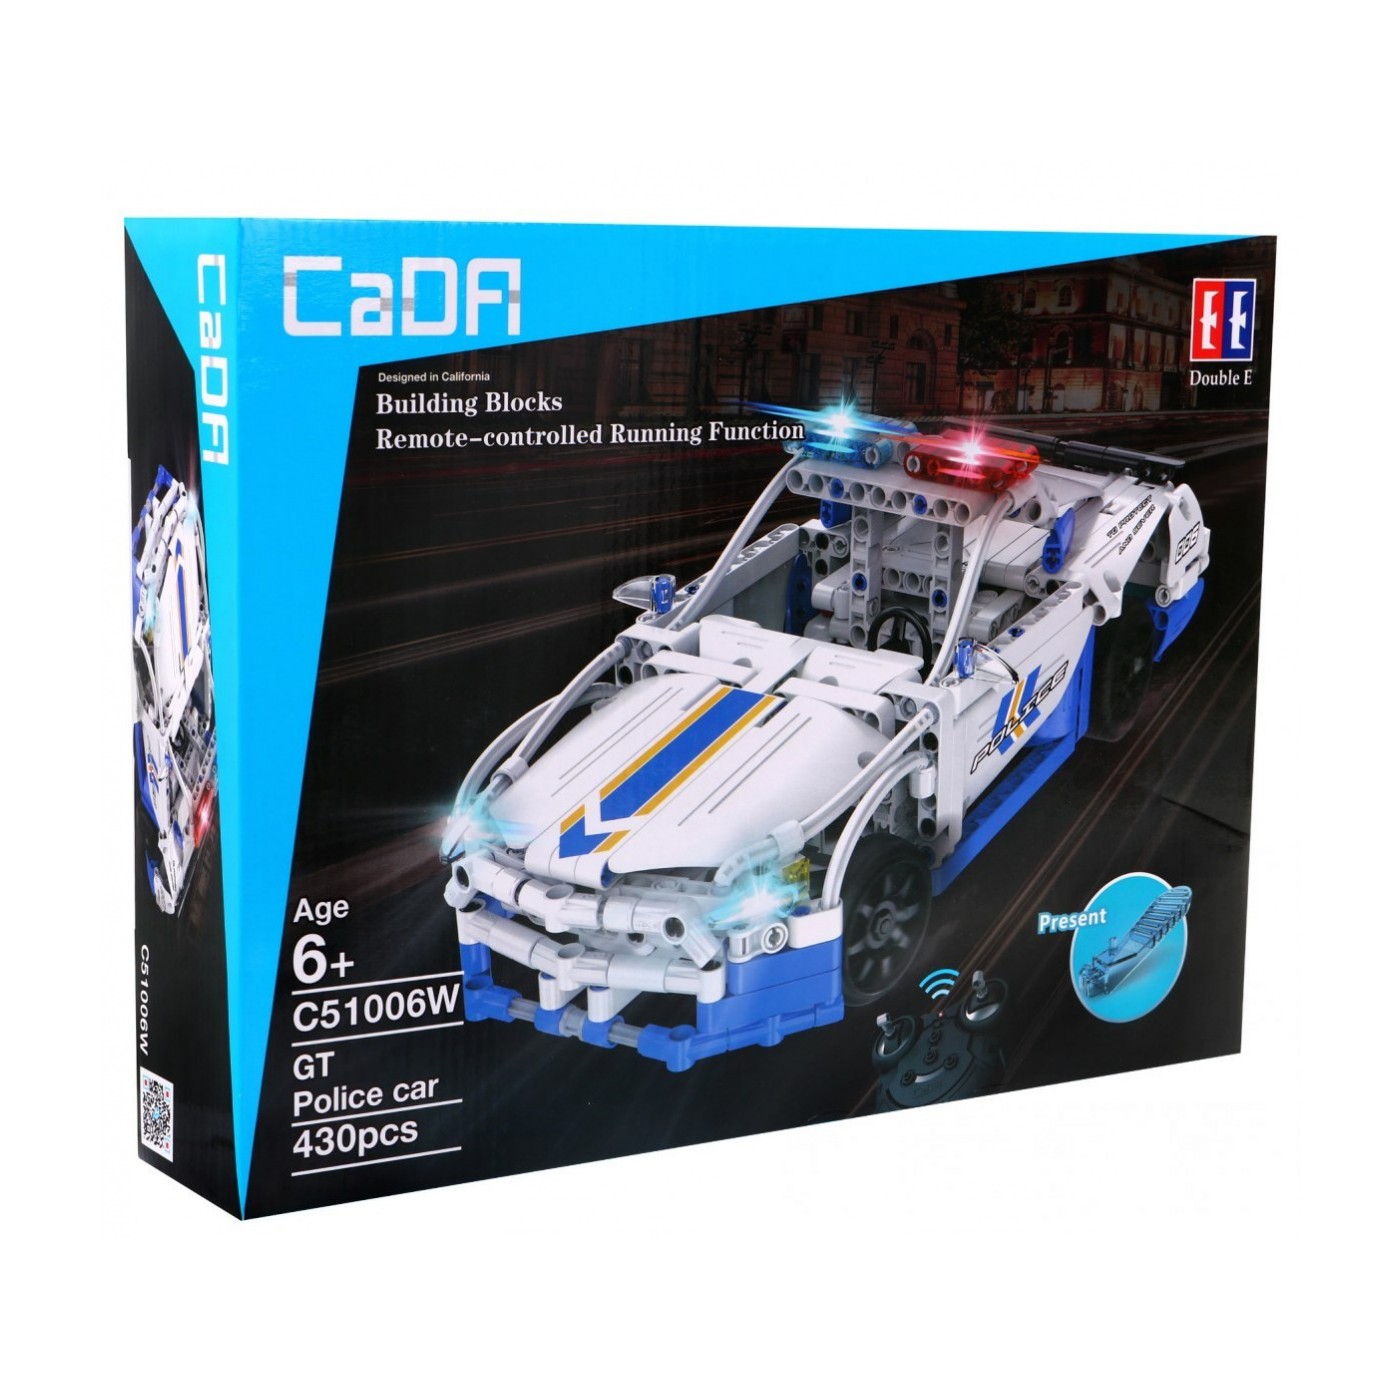 The pads R/C toy car Police 430 el EE